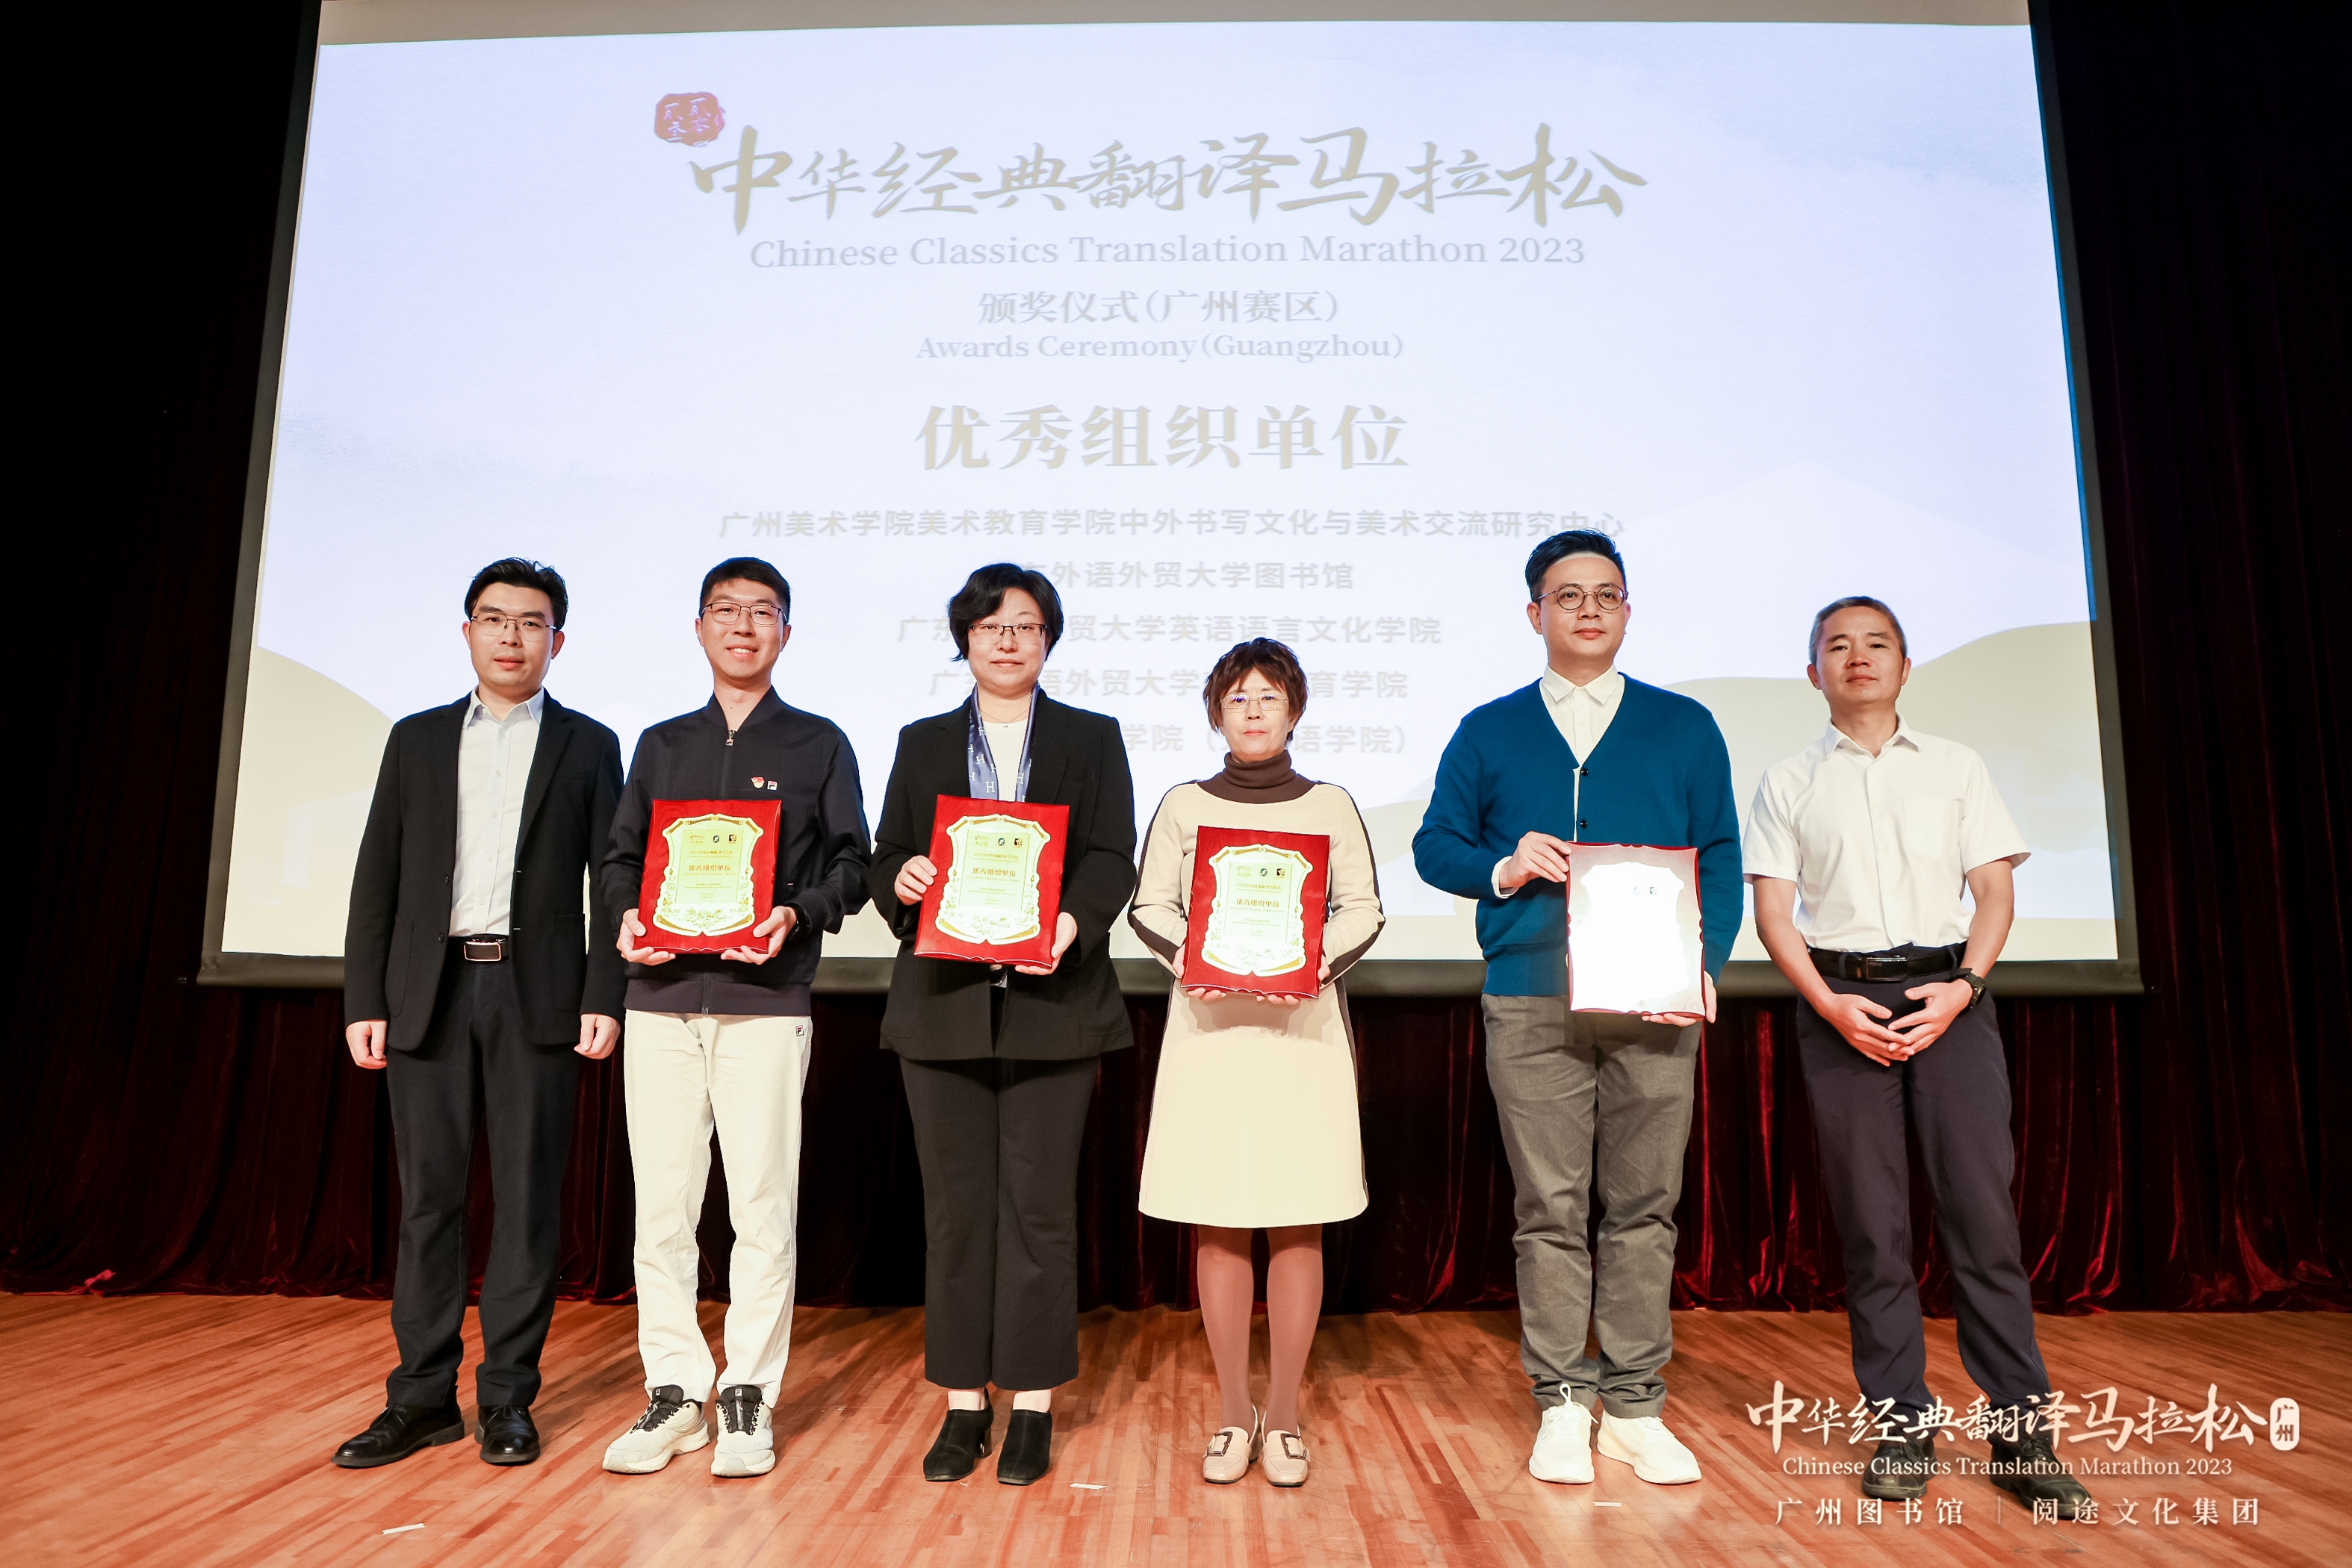 图书馆喜获优秀组织单位 12名学子成为广图“中华文化传译人”